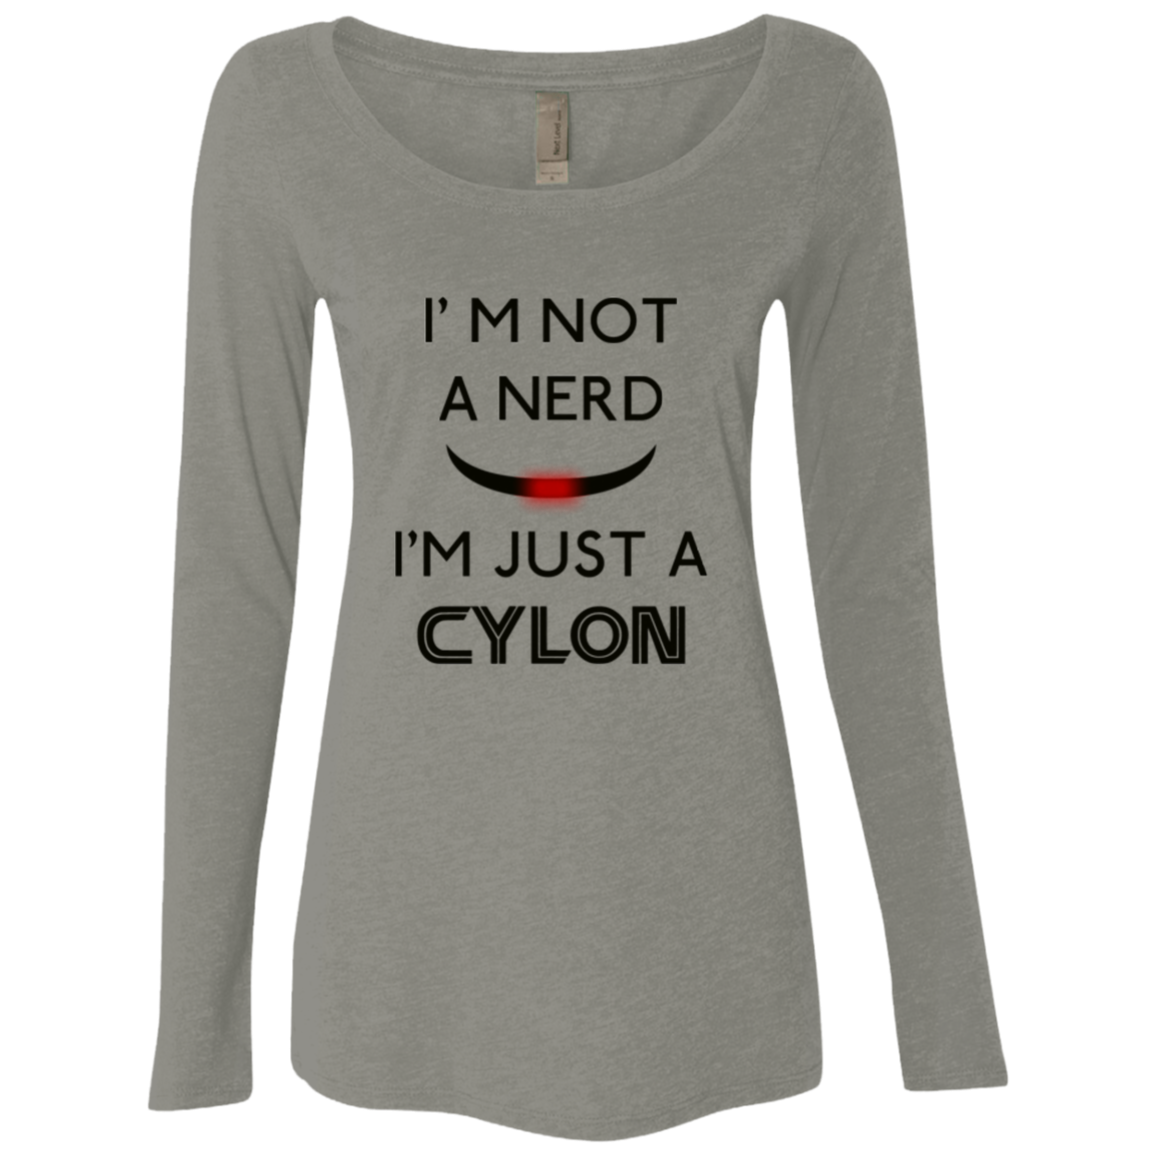 Just cylon Women's Triblend Long Sleeve Shirt